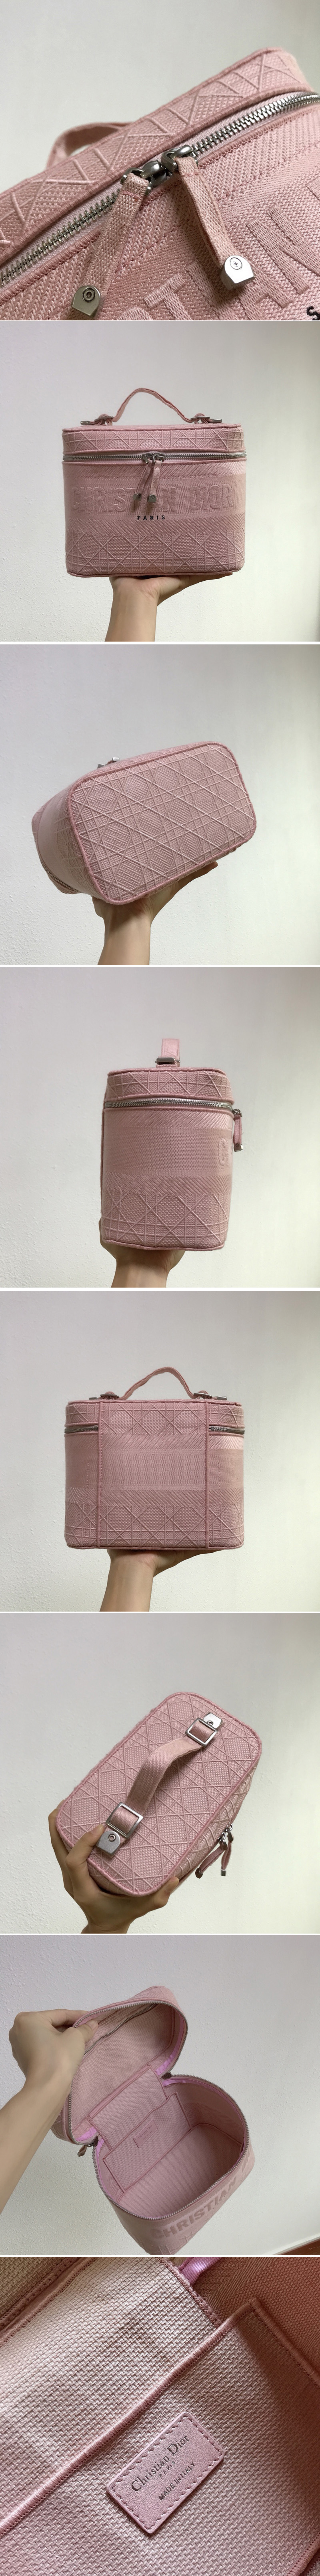 Replica Christian Dior Bags